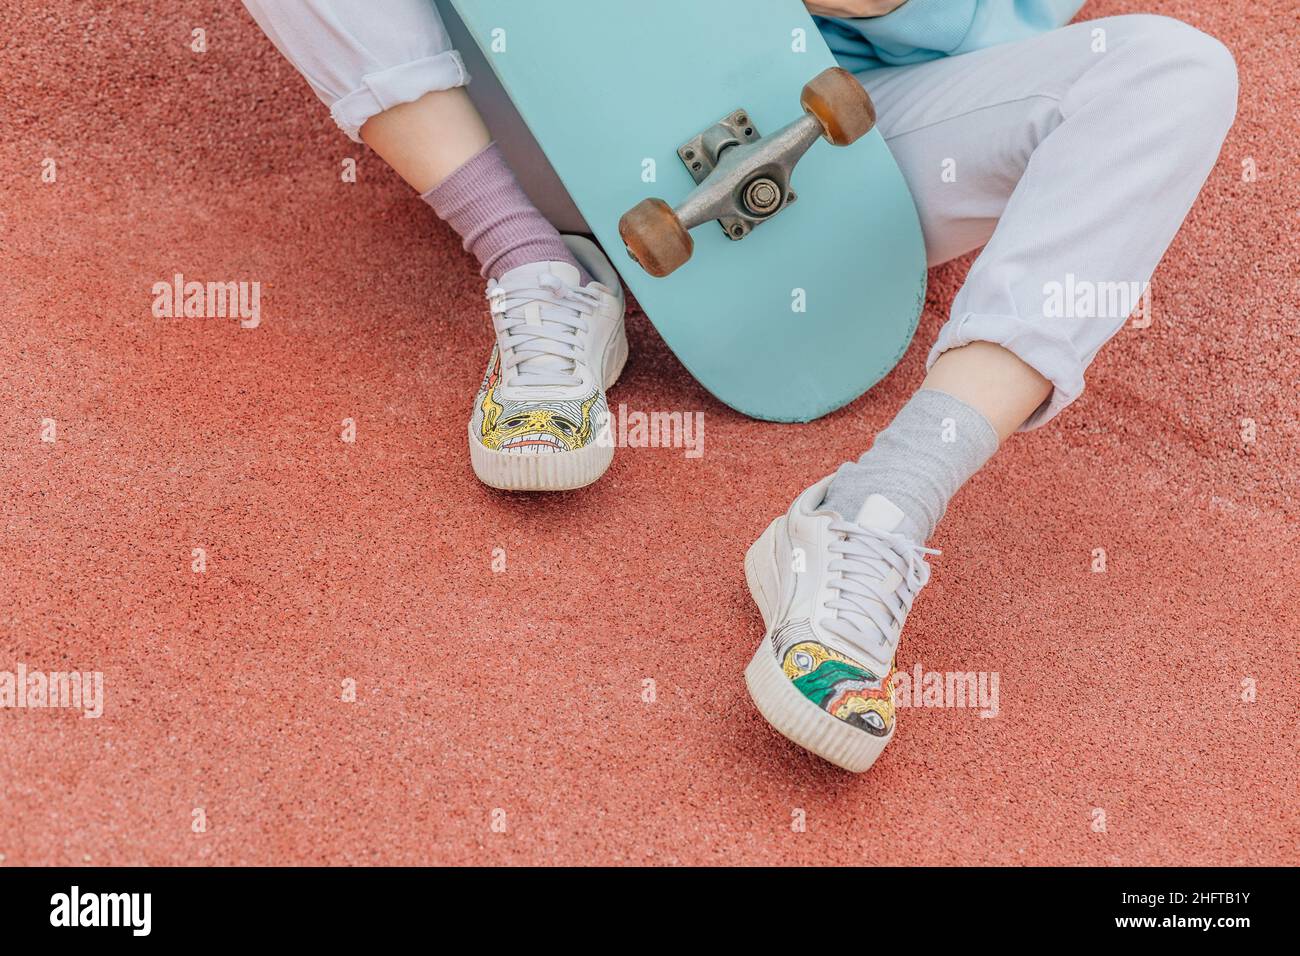 Persona irriconoscibile sullo skateboard, gambe in sneakers con lacci. Foto Stock